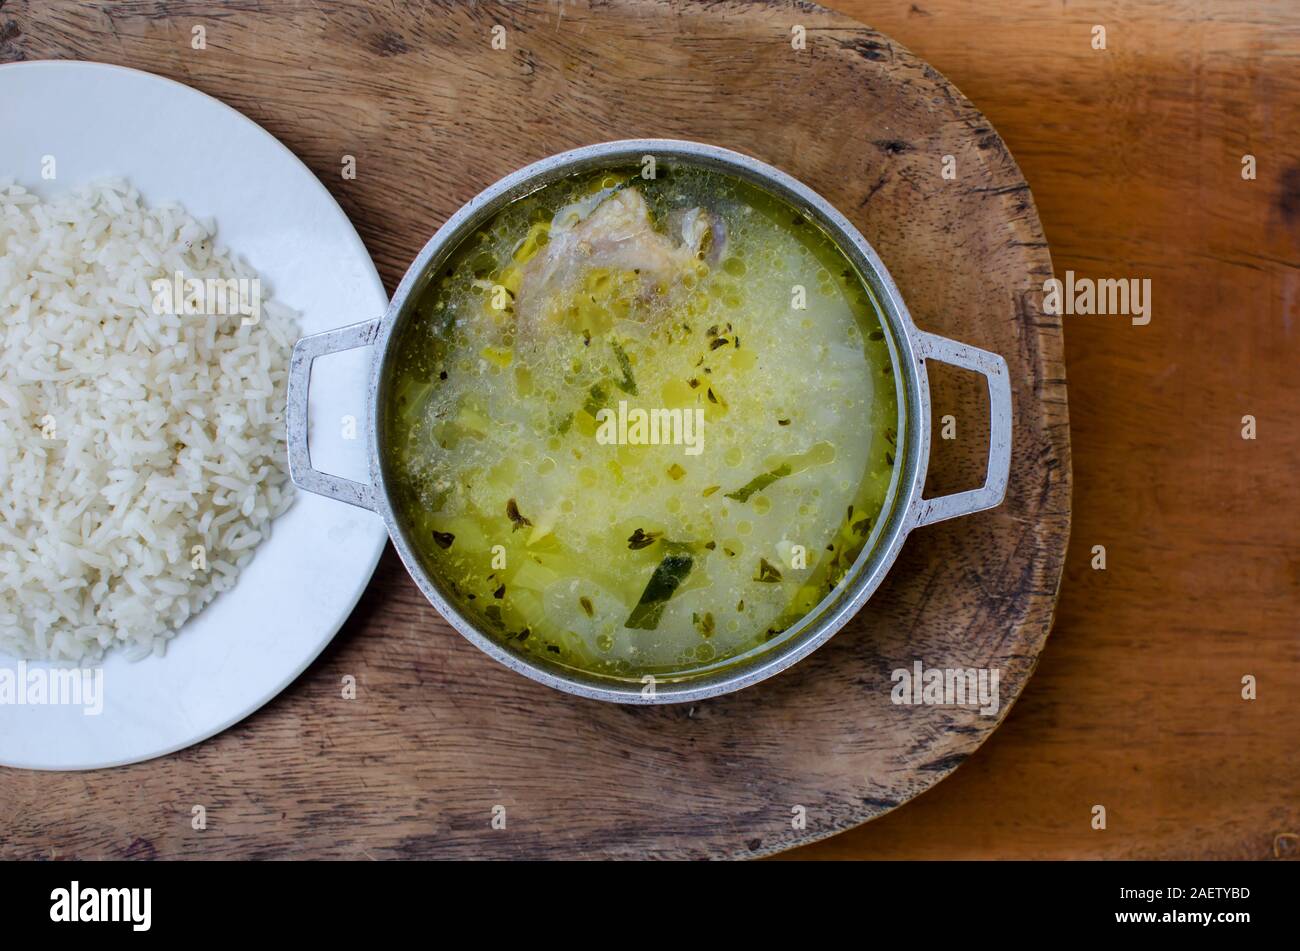 Tradicional comida panameña conocida como 'Sancocho' o sopa de pollo acompañados con 'arroz blanco' o el arroz blanco. Foto de stock